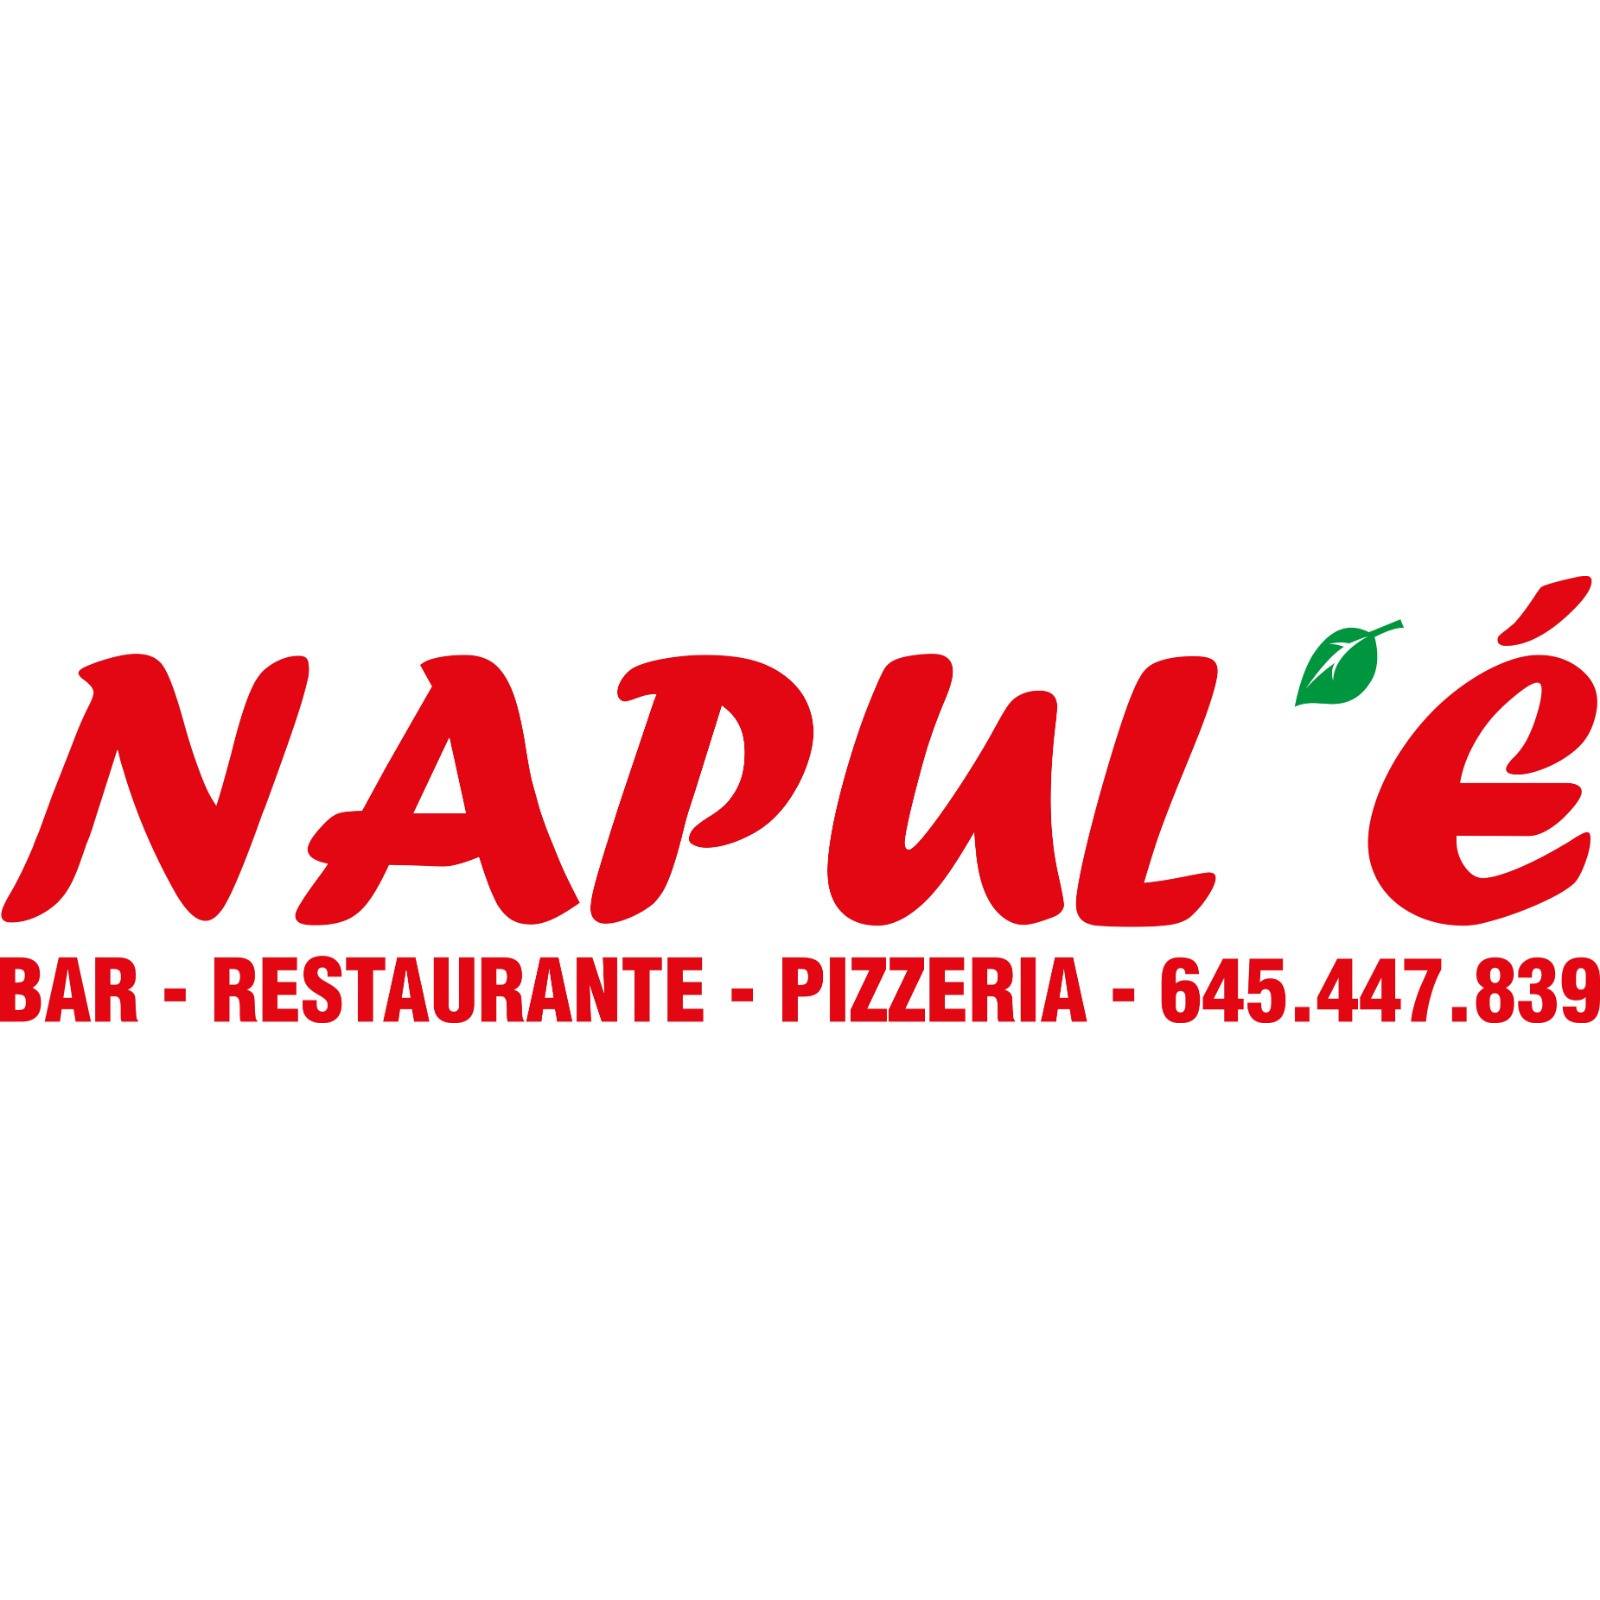 Napul'è Bar-Restaurante-Pizzeria